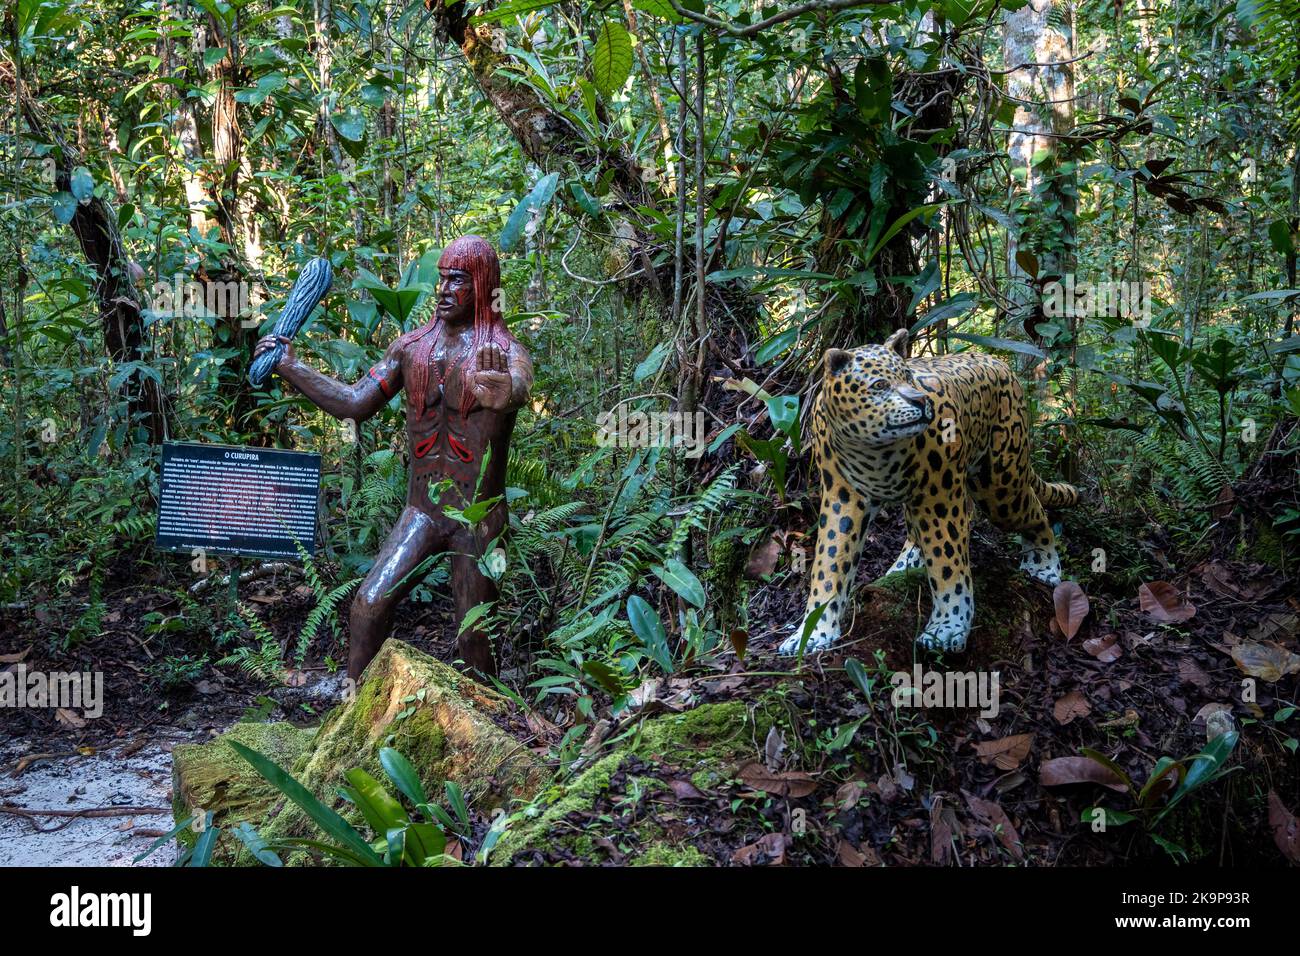 Statua di Curupira, lo spirito della giungla, protettore degli animali, una creatura mitologica del folclore brasiliano. Amazonas, Brasile Foto Stock